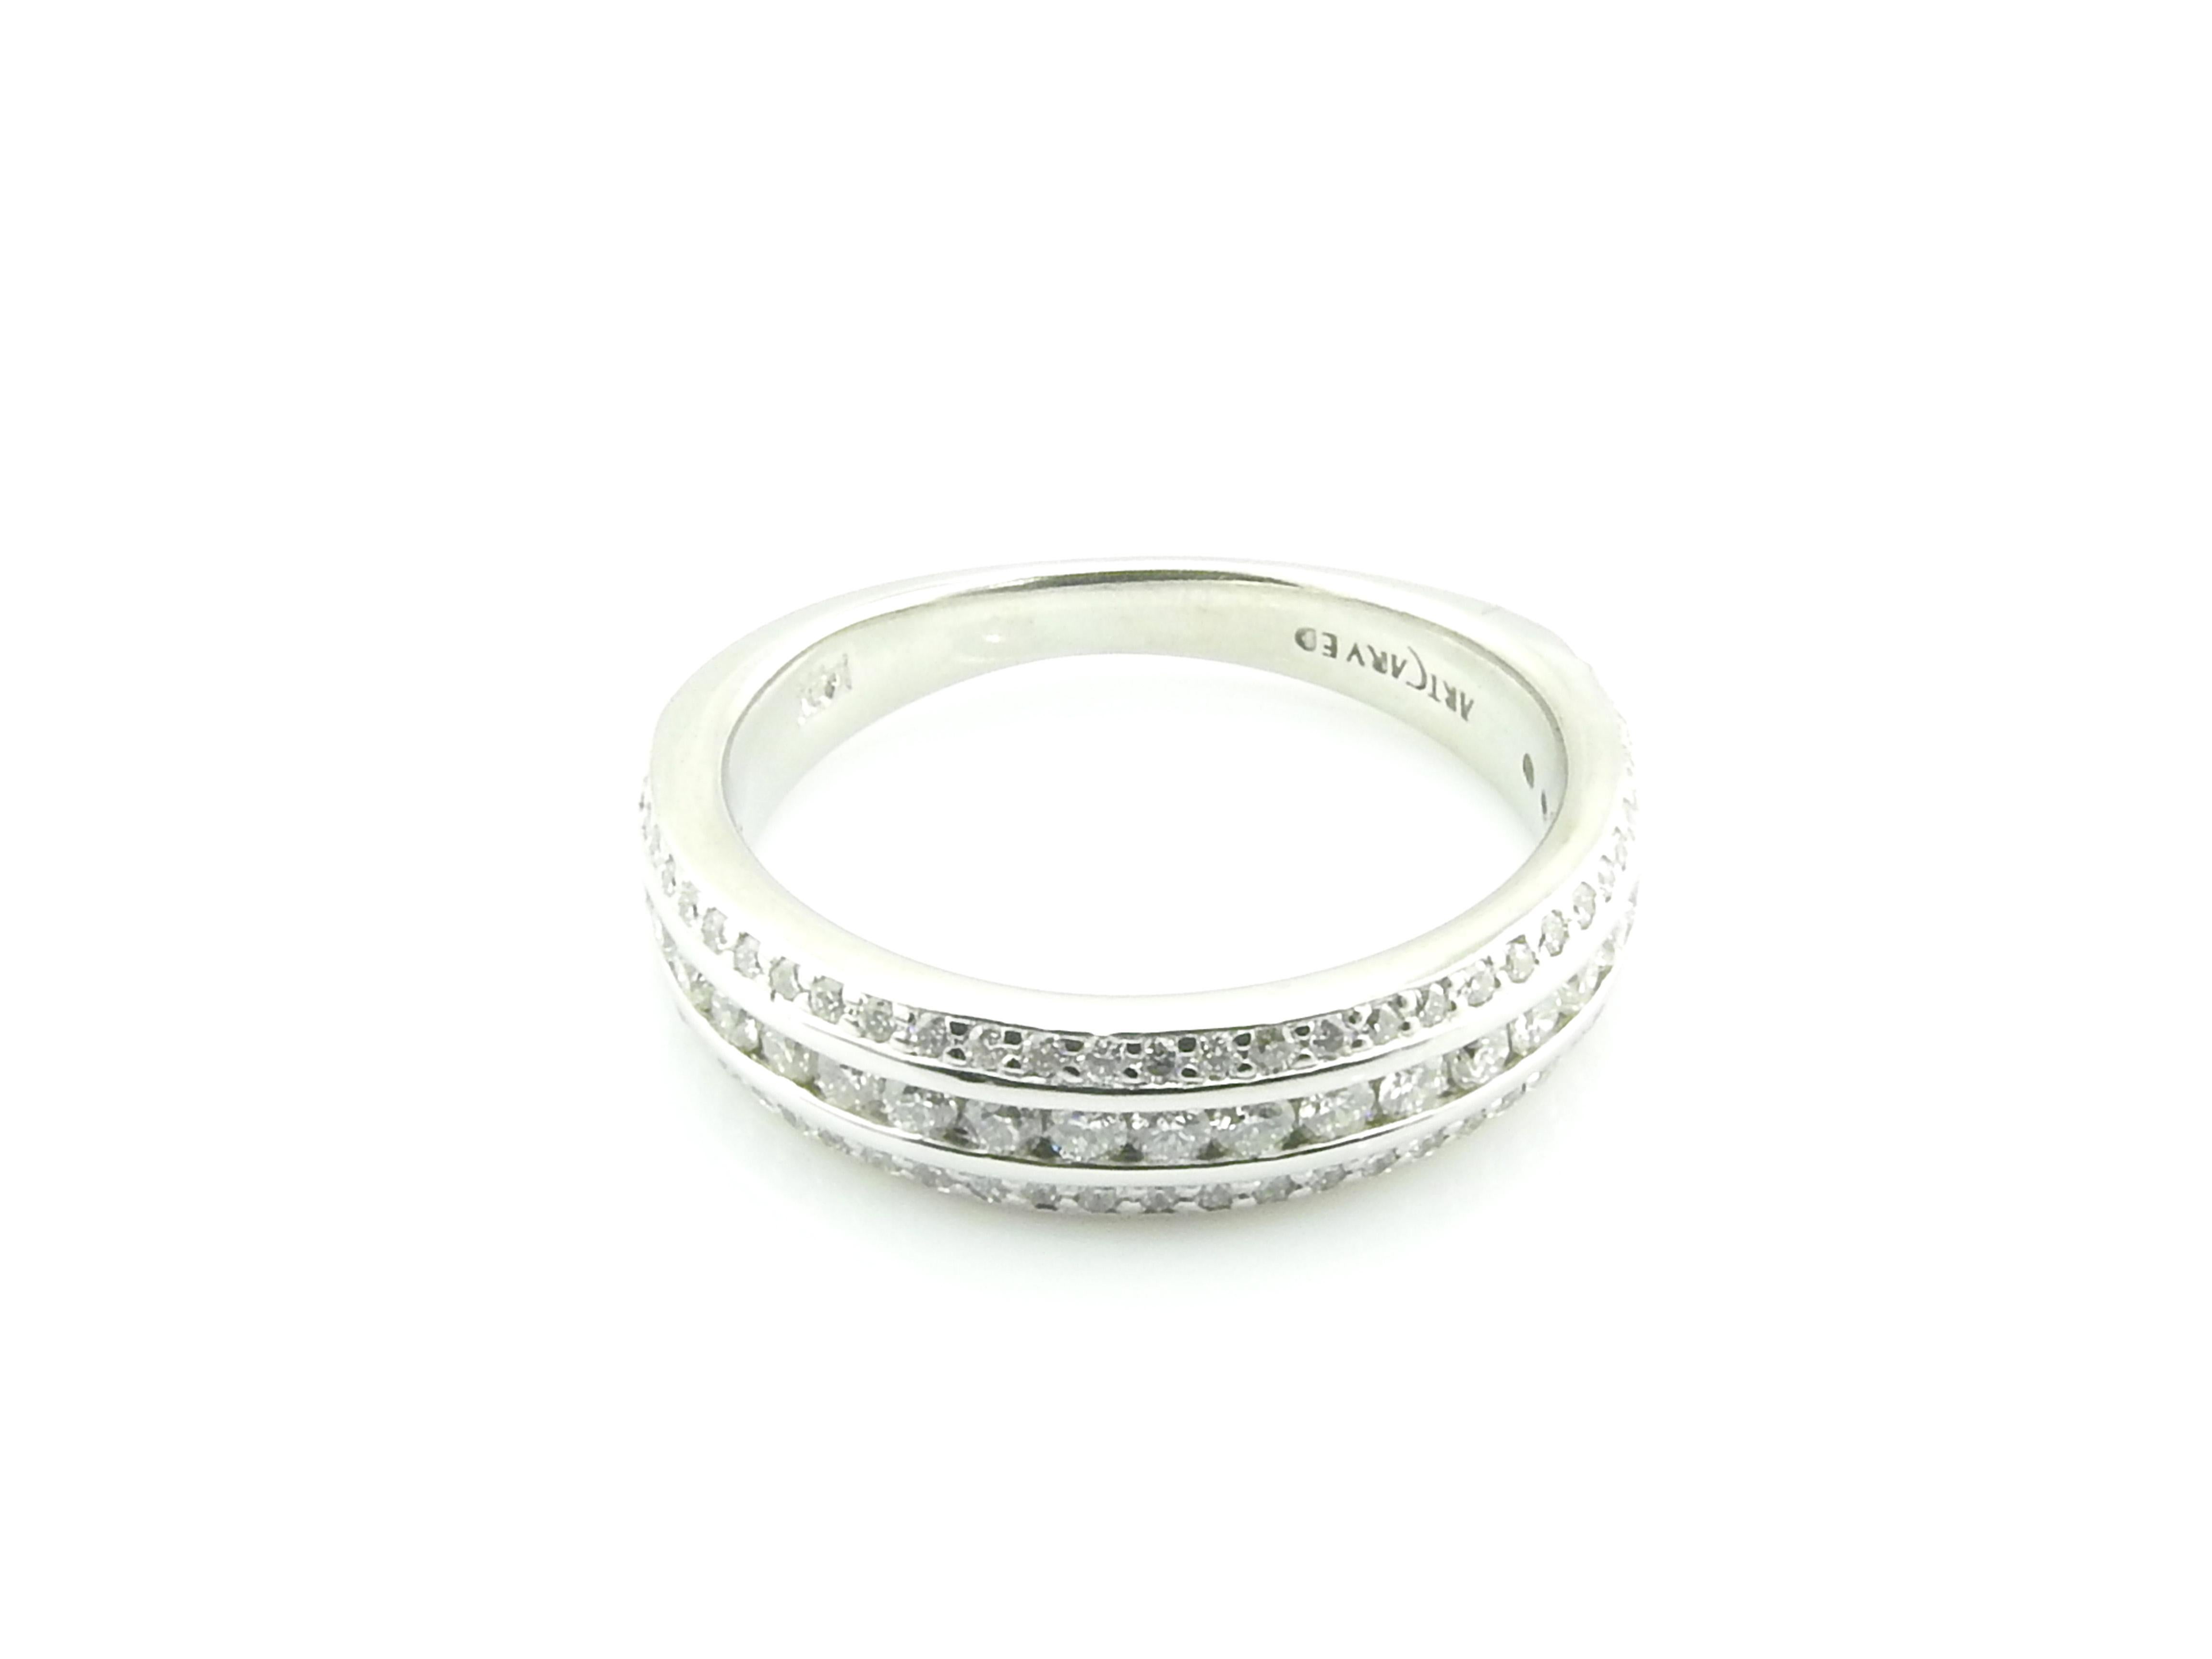 Ce bracelet étincelant est orné de 96 diamants ronds de taille brillante sertis dans de l'or blanc 14 carats magnifiquement détaillé.  Largeur :  5 mm.  Tige :  2 mm.

Poids total approximatif des diamants :  .70 ct.

Couleur du diamant : 